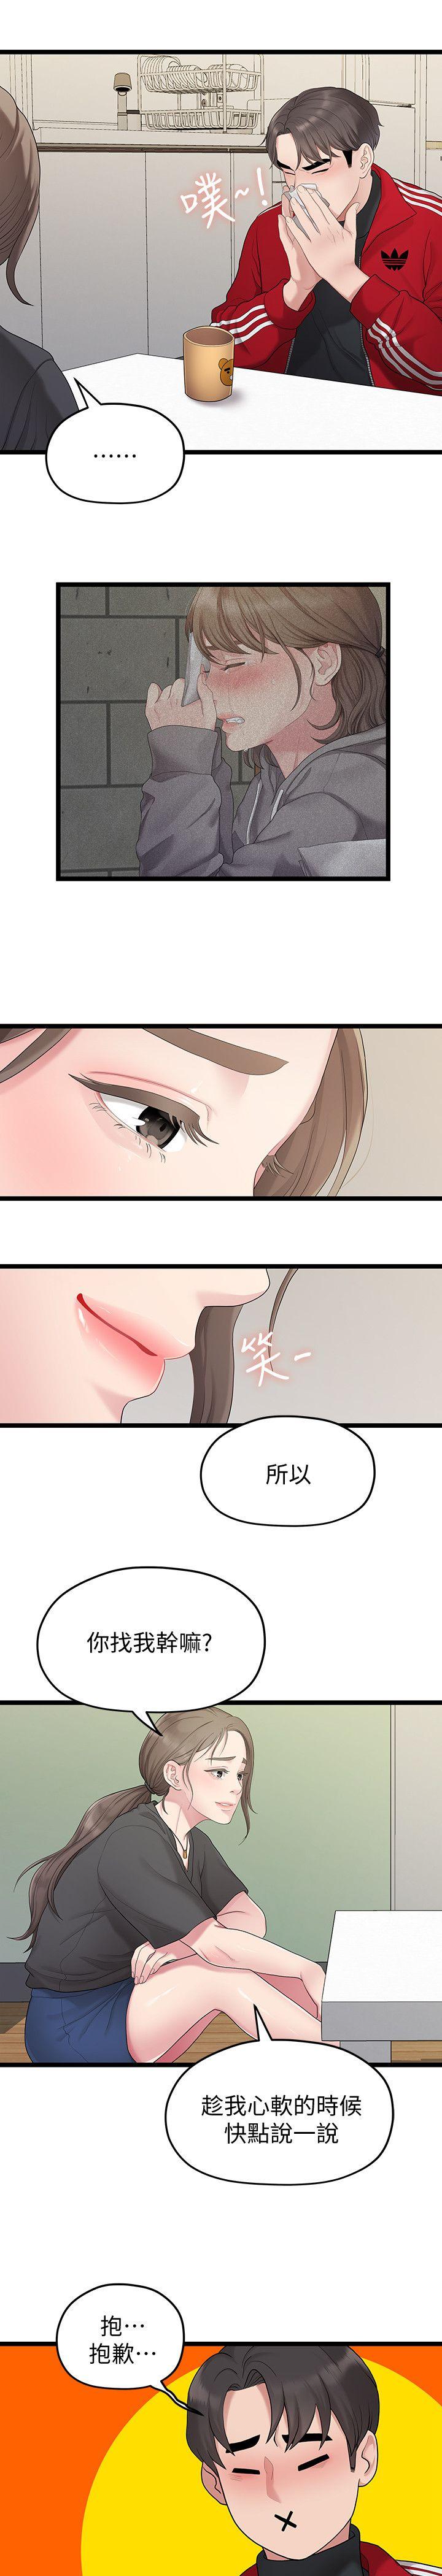 韩国污漫画 我們的非常關系 第31话-爱情也需要努力经营 5